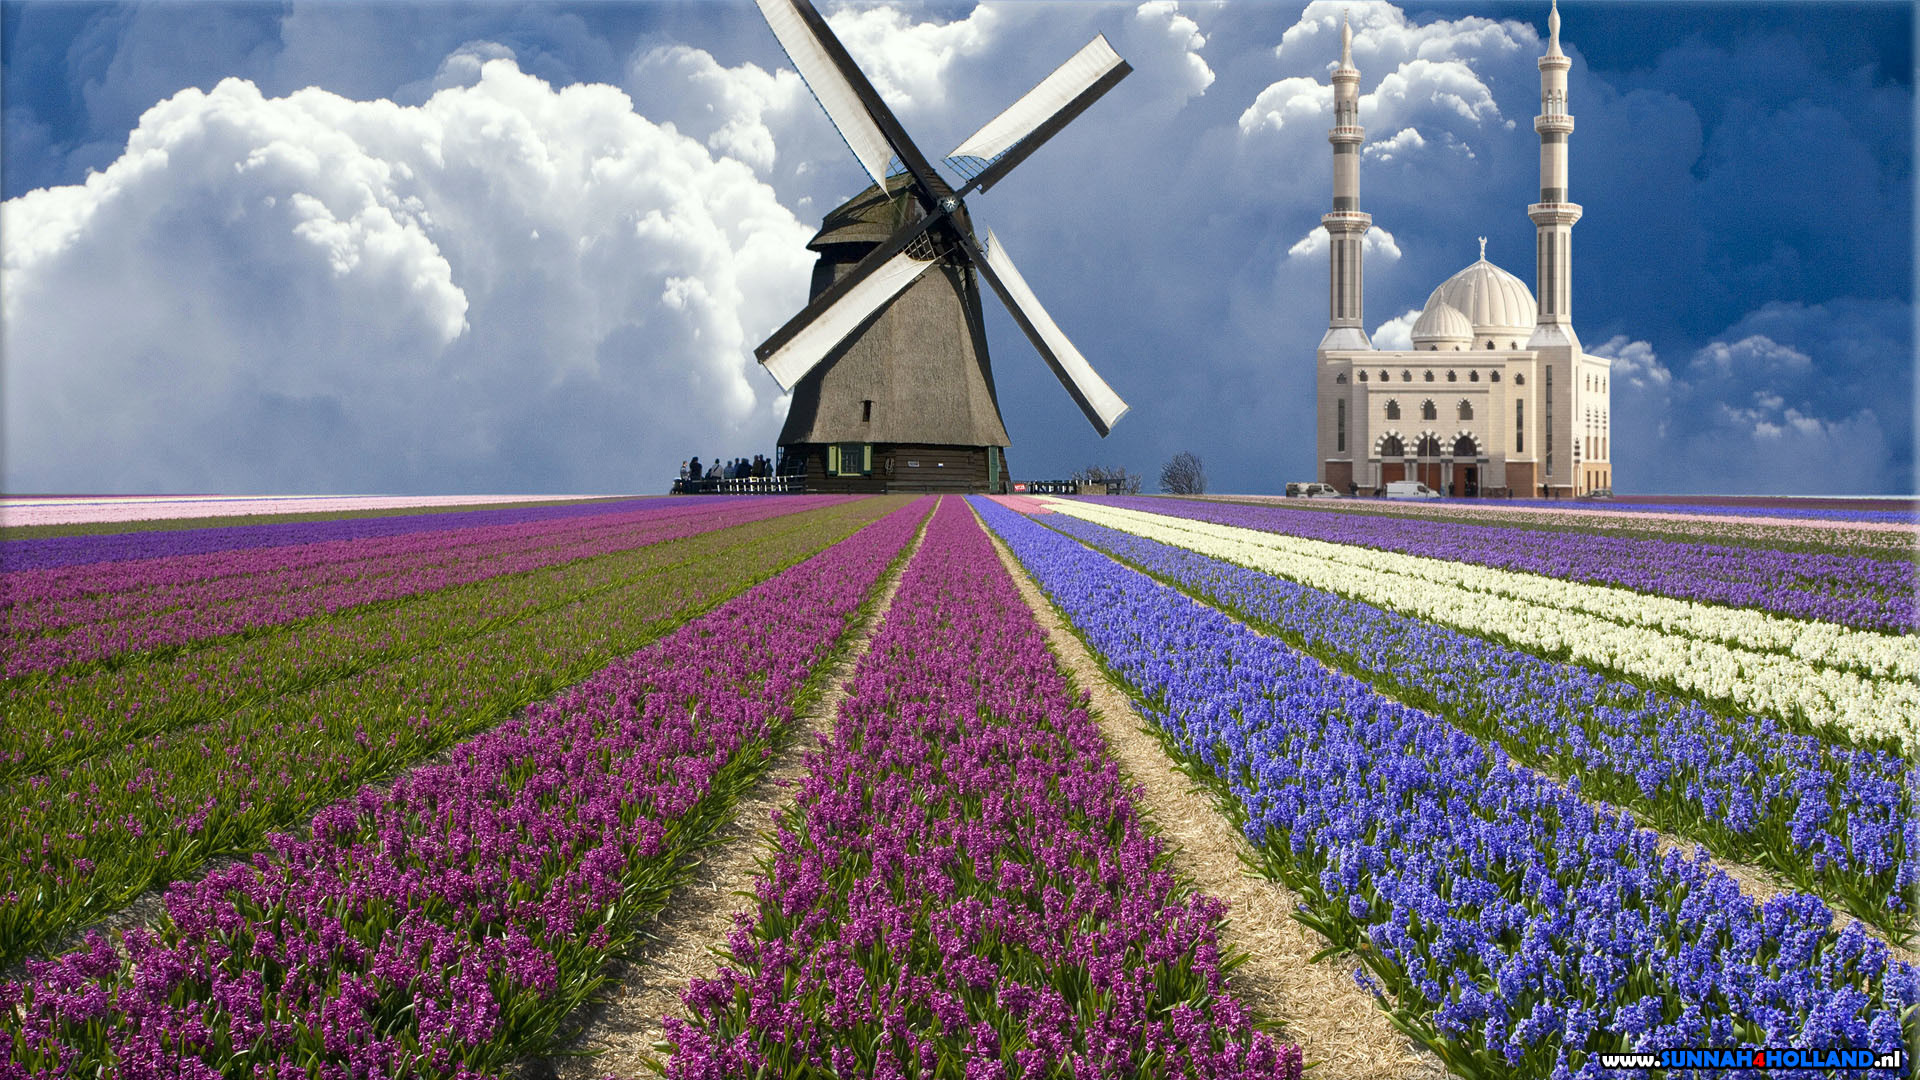 1920x1080 Dutch Windmill Wallpaper - WallpaperSafari